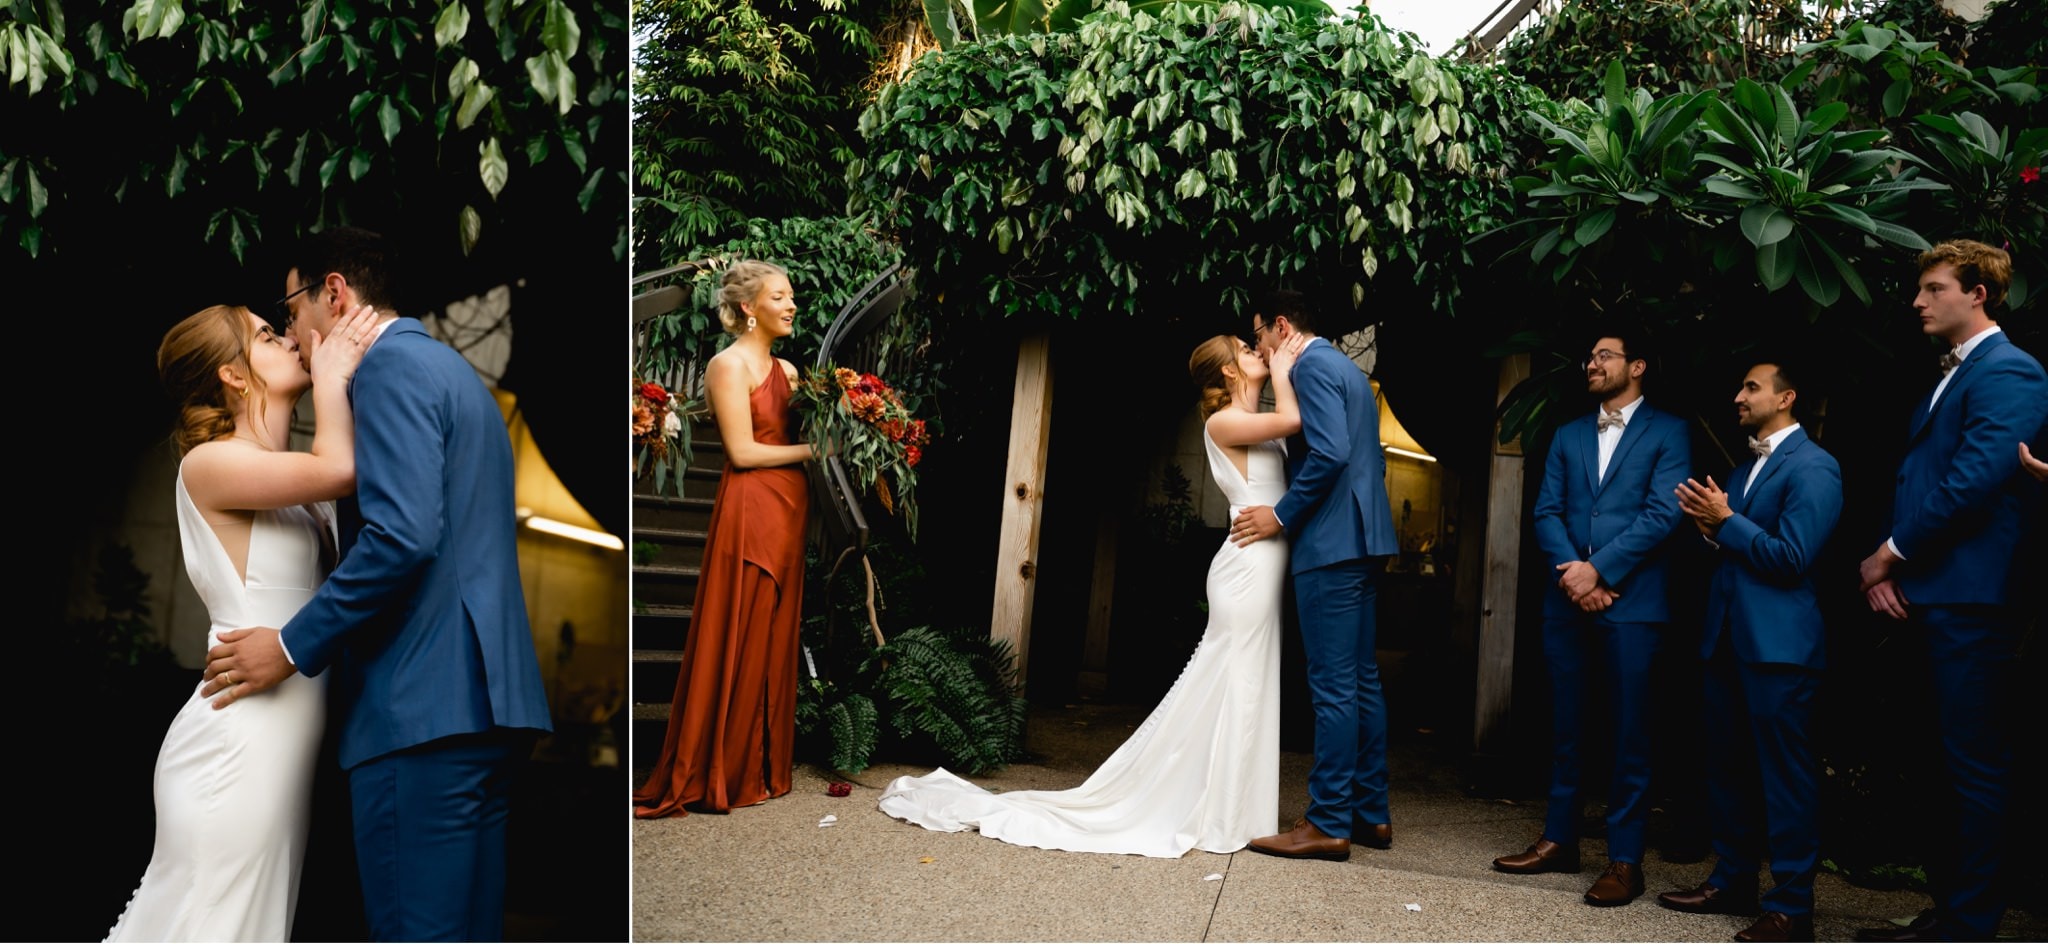 des moines botanical garden wedding photography